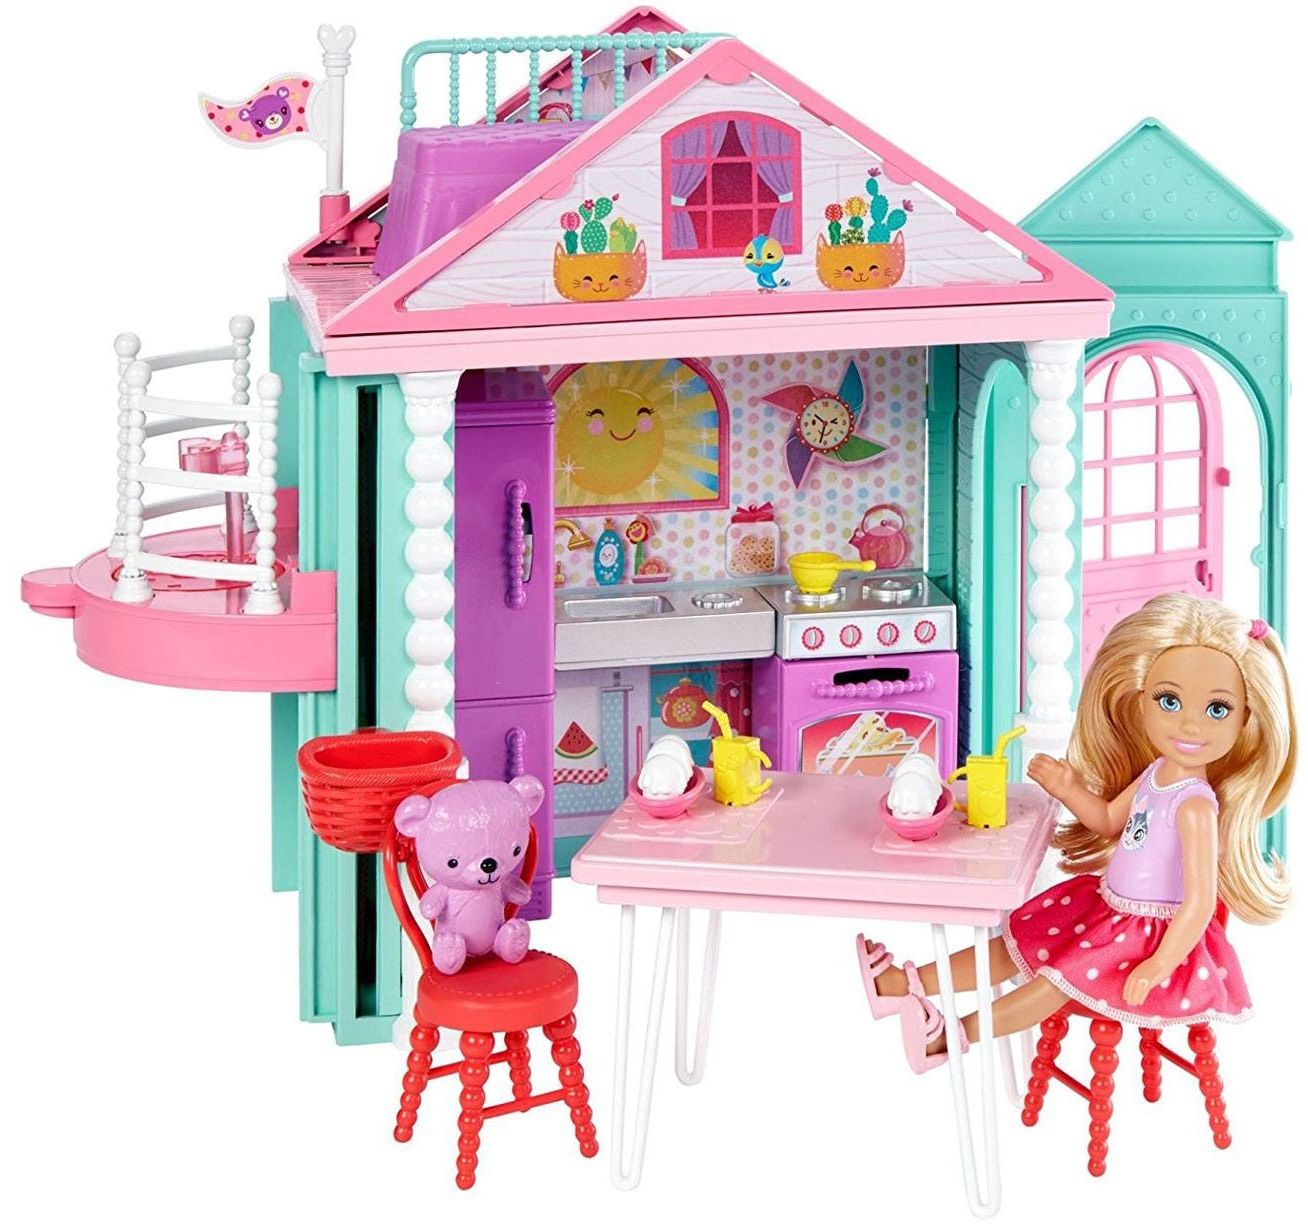 Mattel Игровой набор Barbie "Домик Челси"